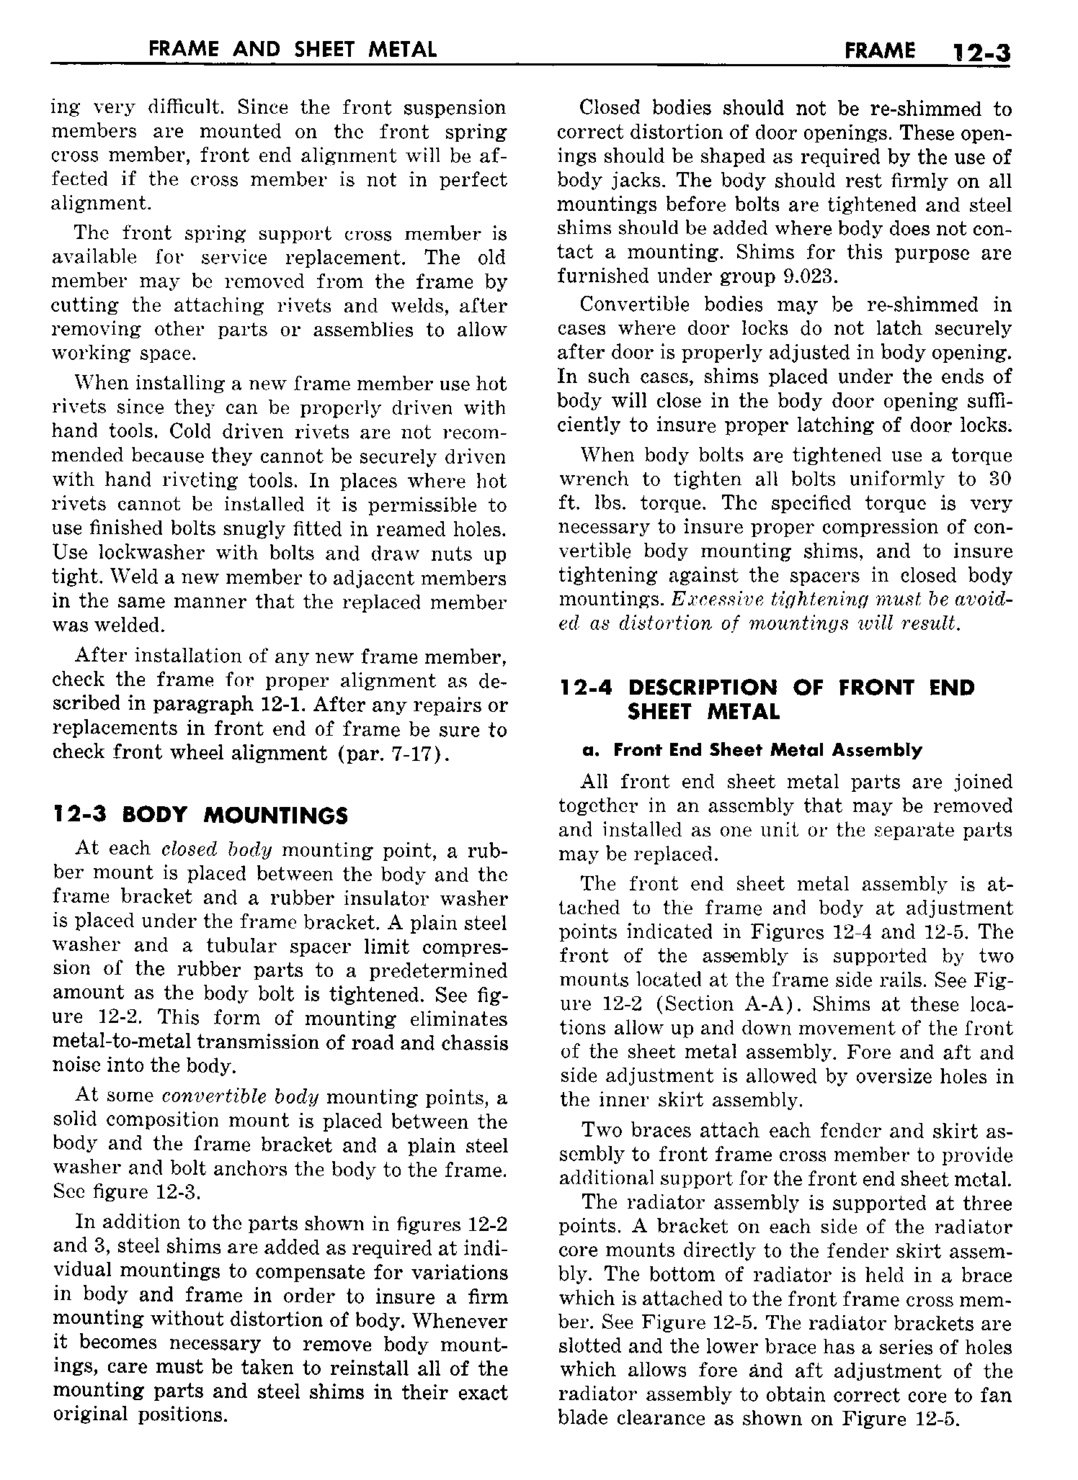 n_13 1960 Buick Shop Manual - Frame & Sheet Metal-003-003.jpg